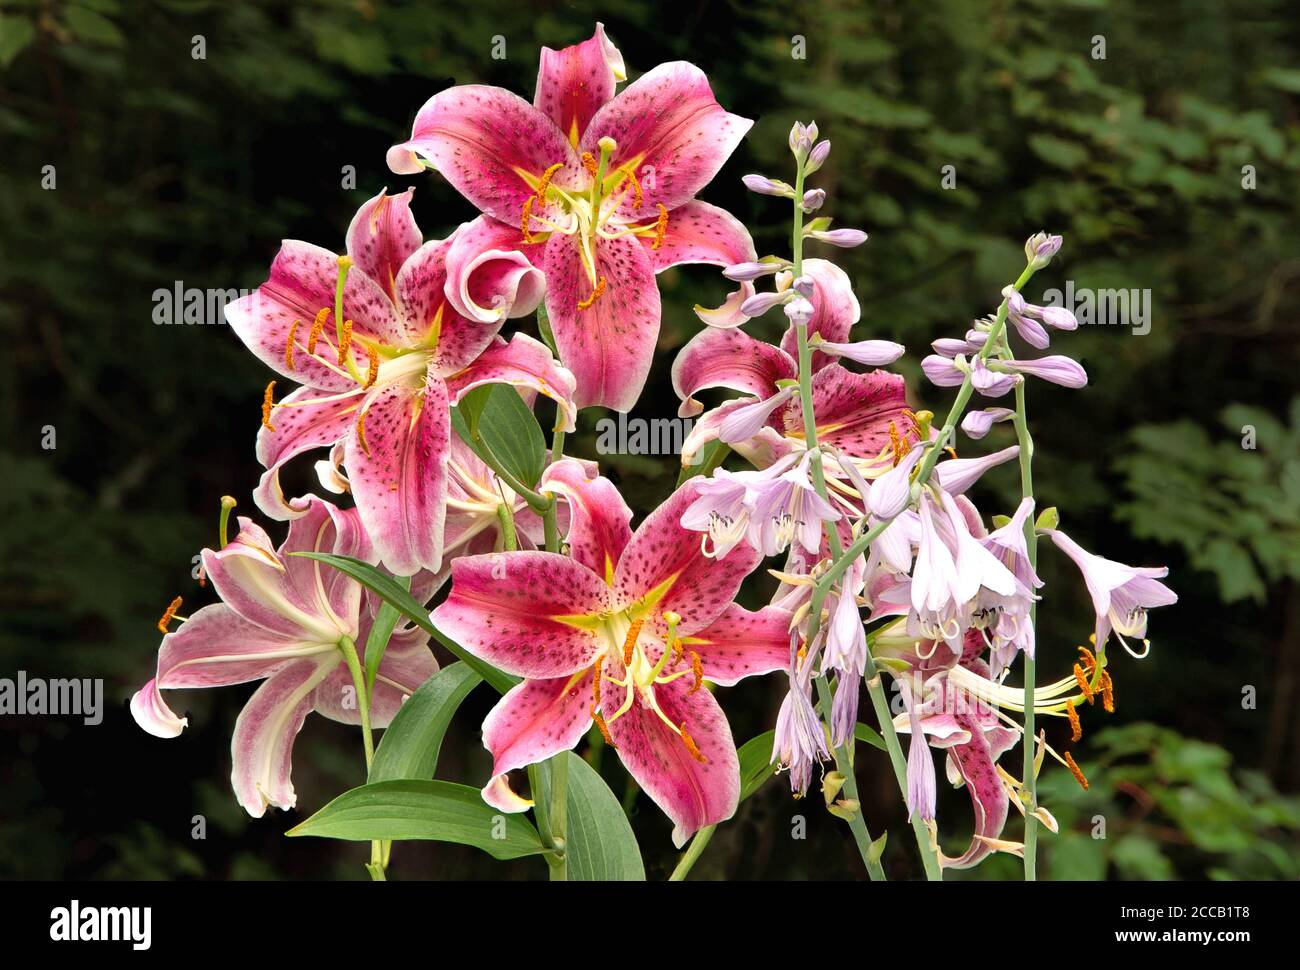 L'été, le lys oriental aux étoiles fleuries est orné de fleurs de cramoisi aux côtés de fleurs de Hosta de couleur lavande sur fond vert foncé. Banque D'Images